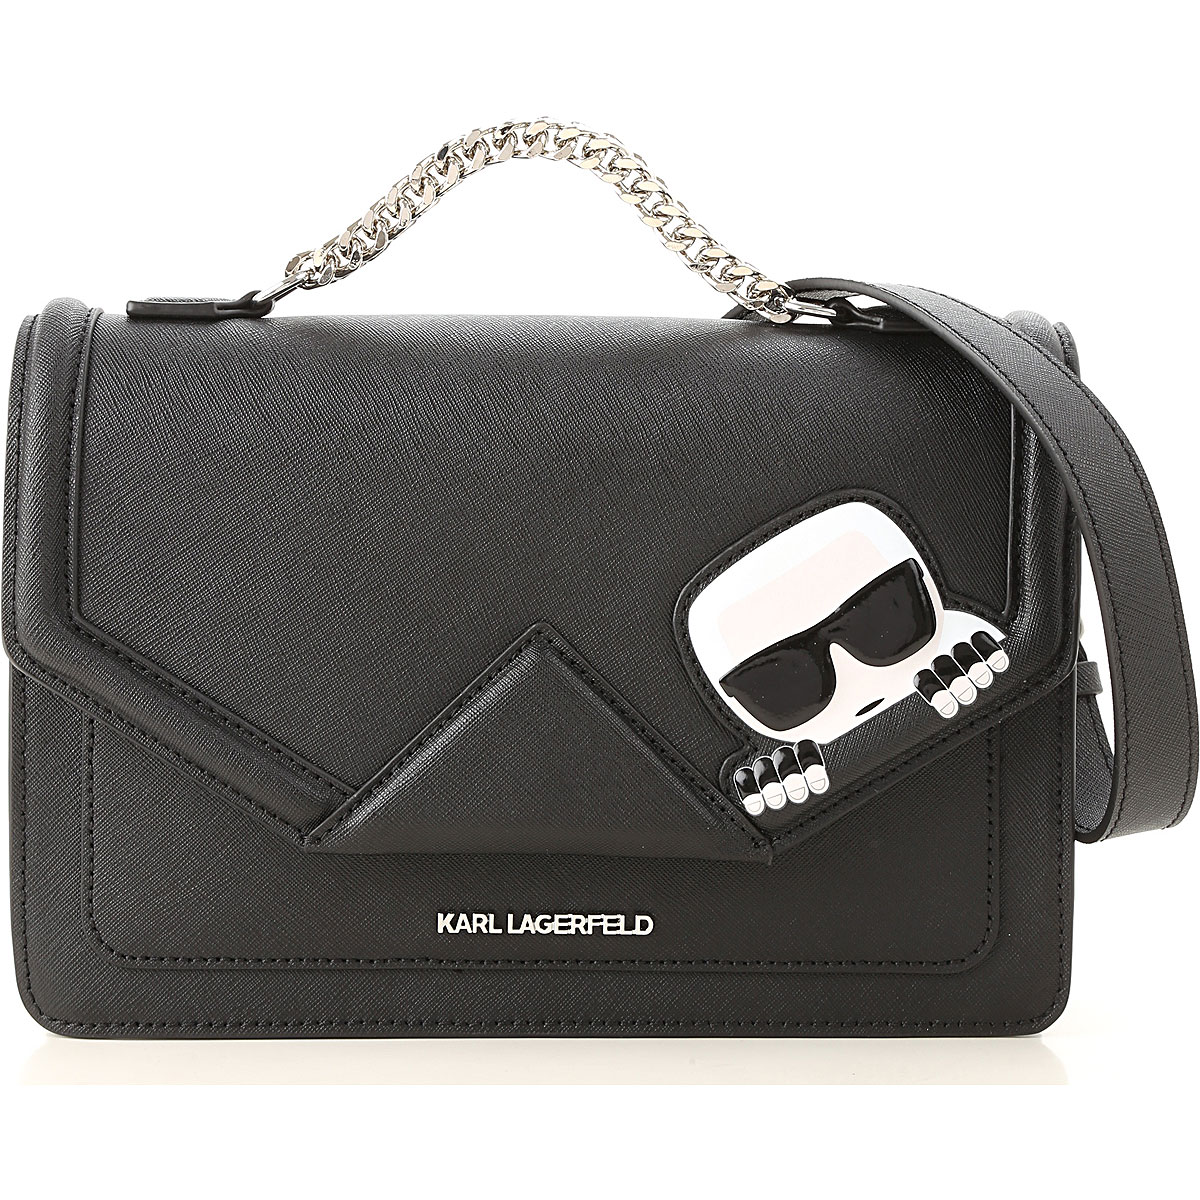 Handbags Karl Lagerfeld, Style code: 91kw3084-86-